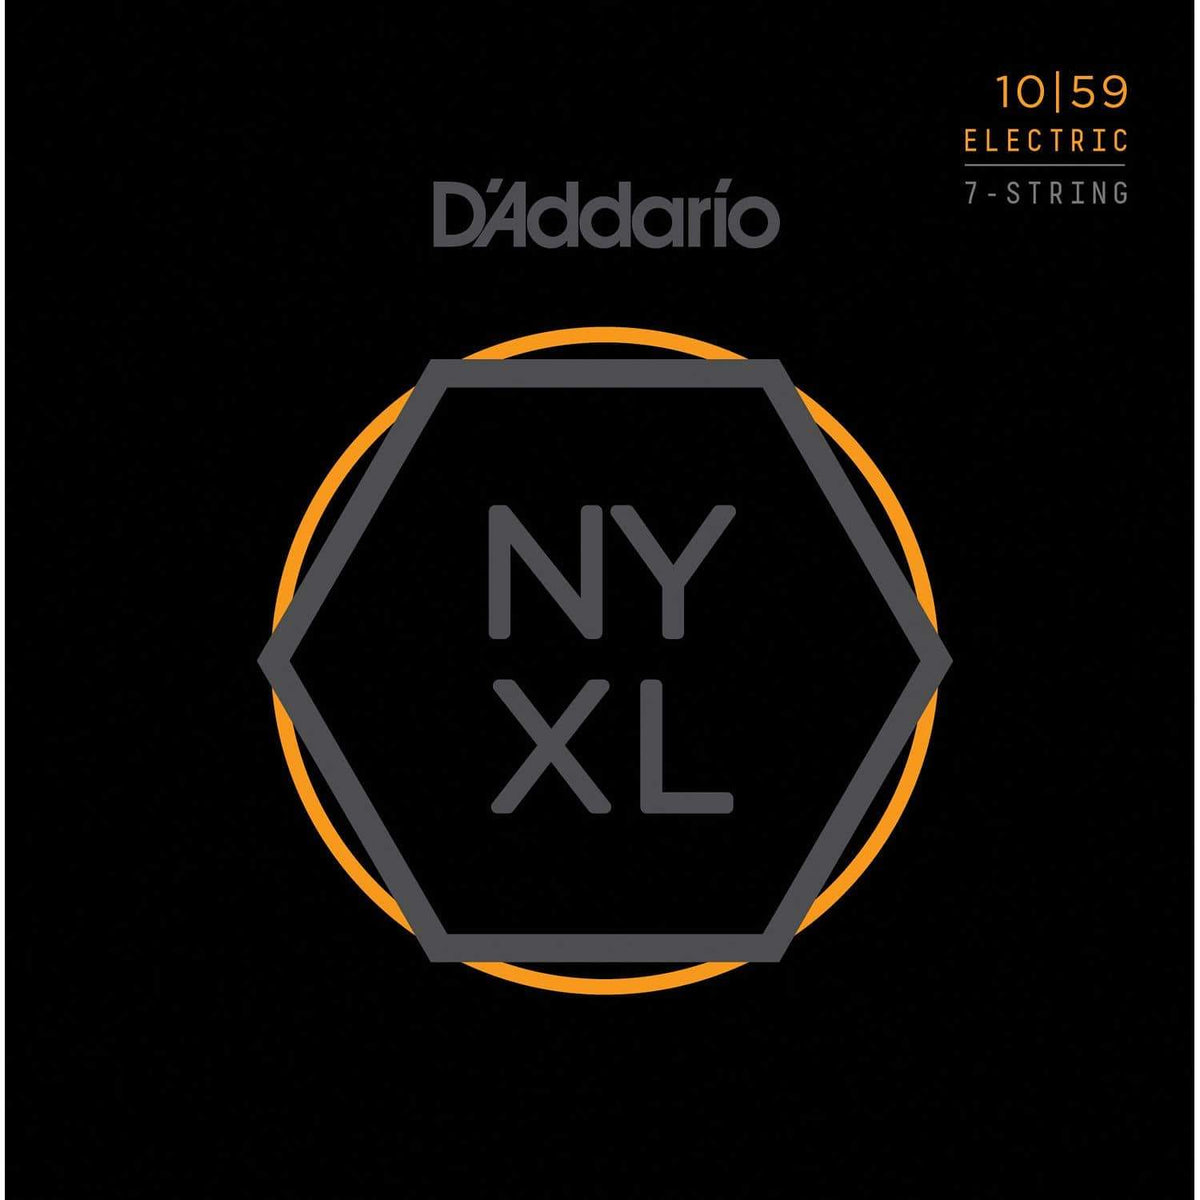 D&#39;ADDARIO STRINGS - ELECTRIC GUITAR STRINGS Default NYXL1059 Nickel Wound 7-String Electric Guitar Strings, Regular Light, 10-59